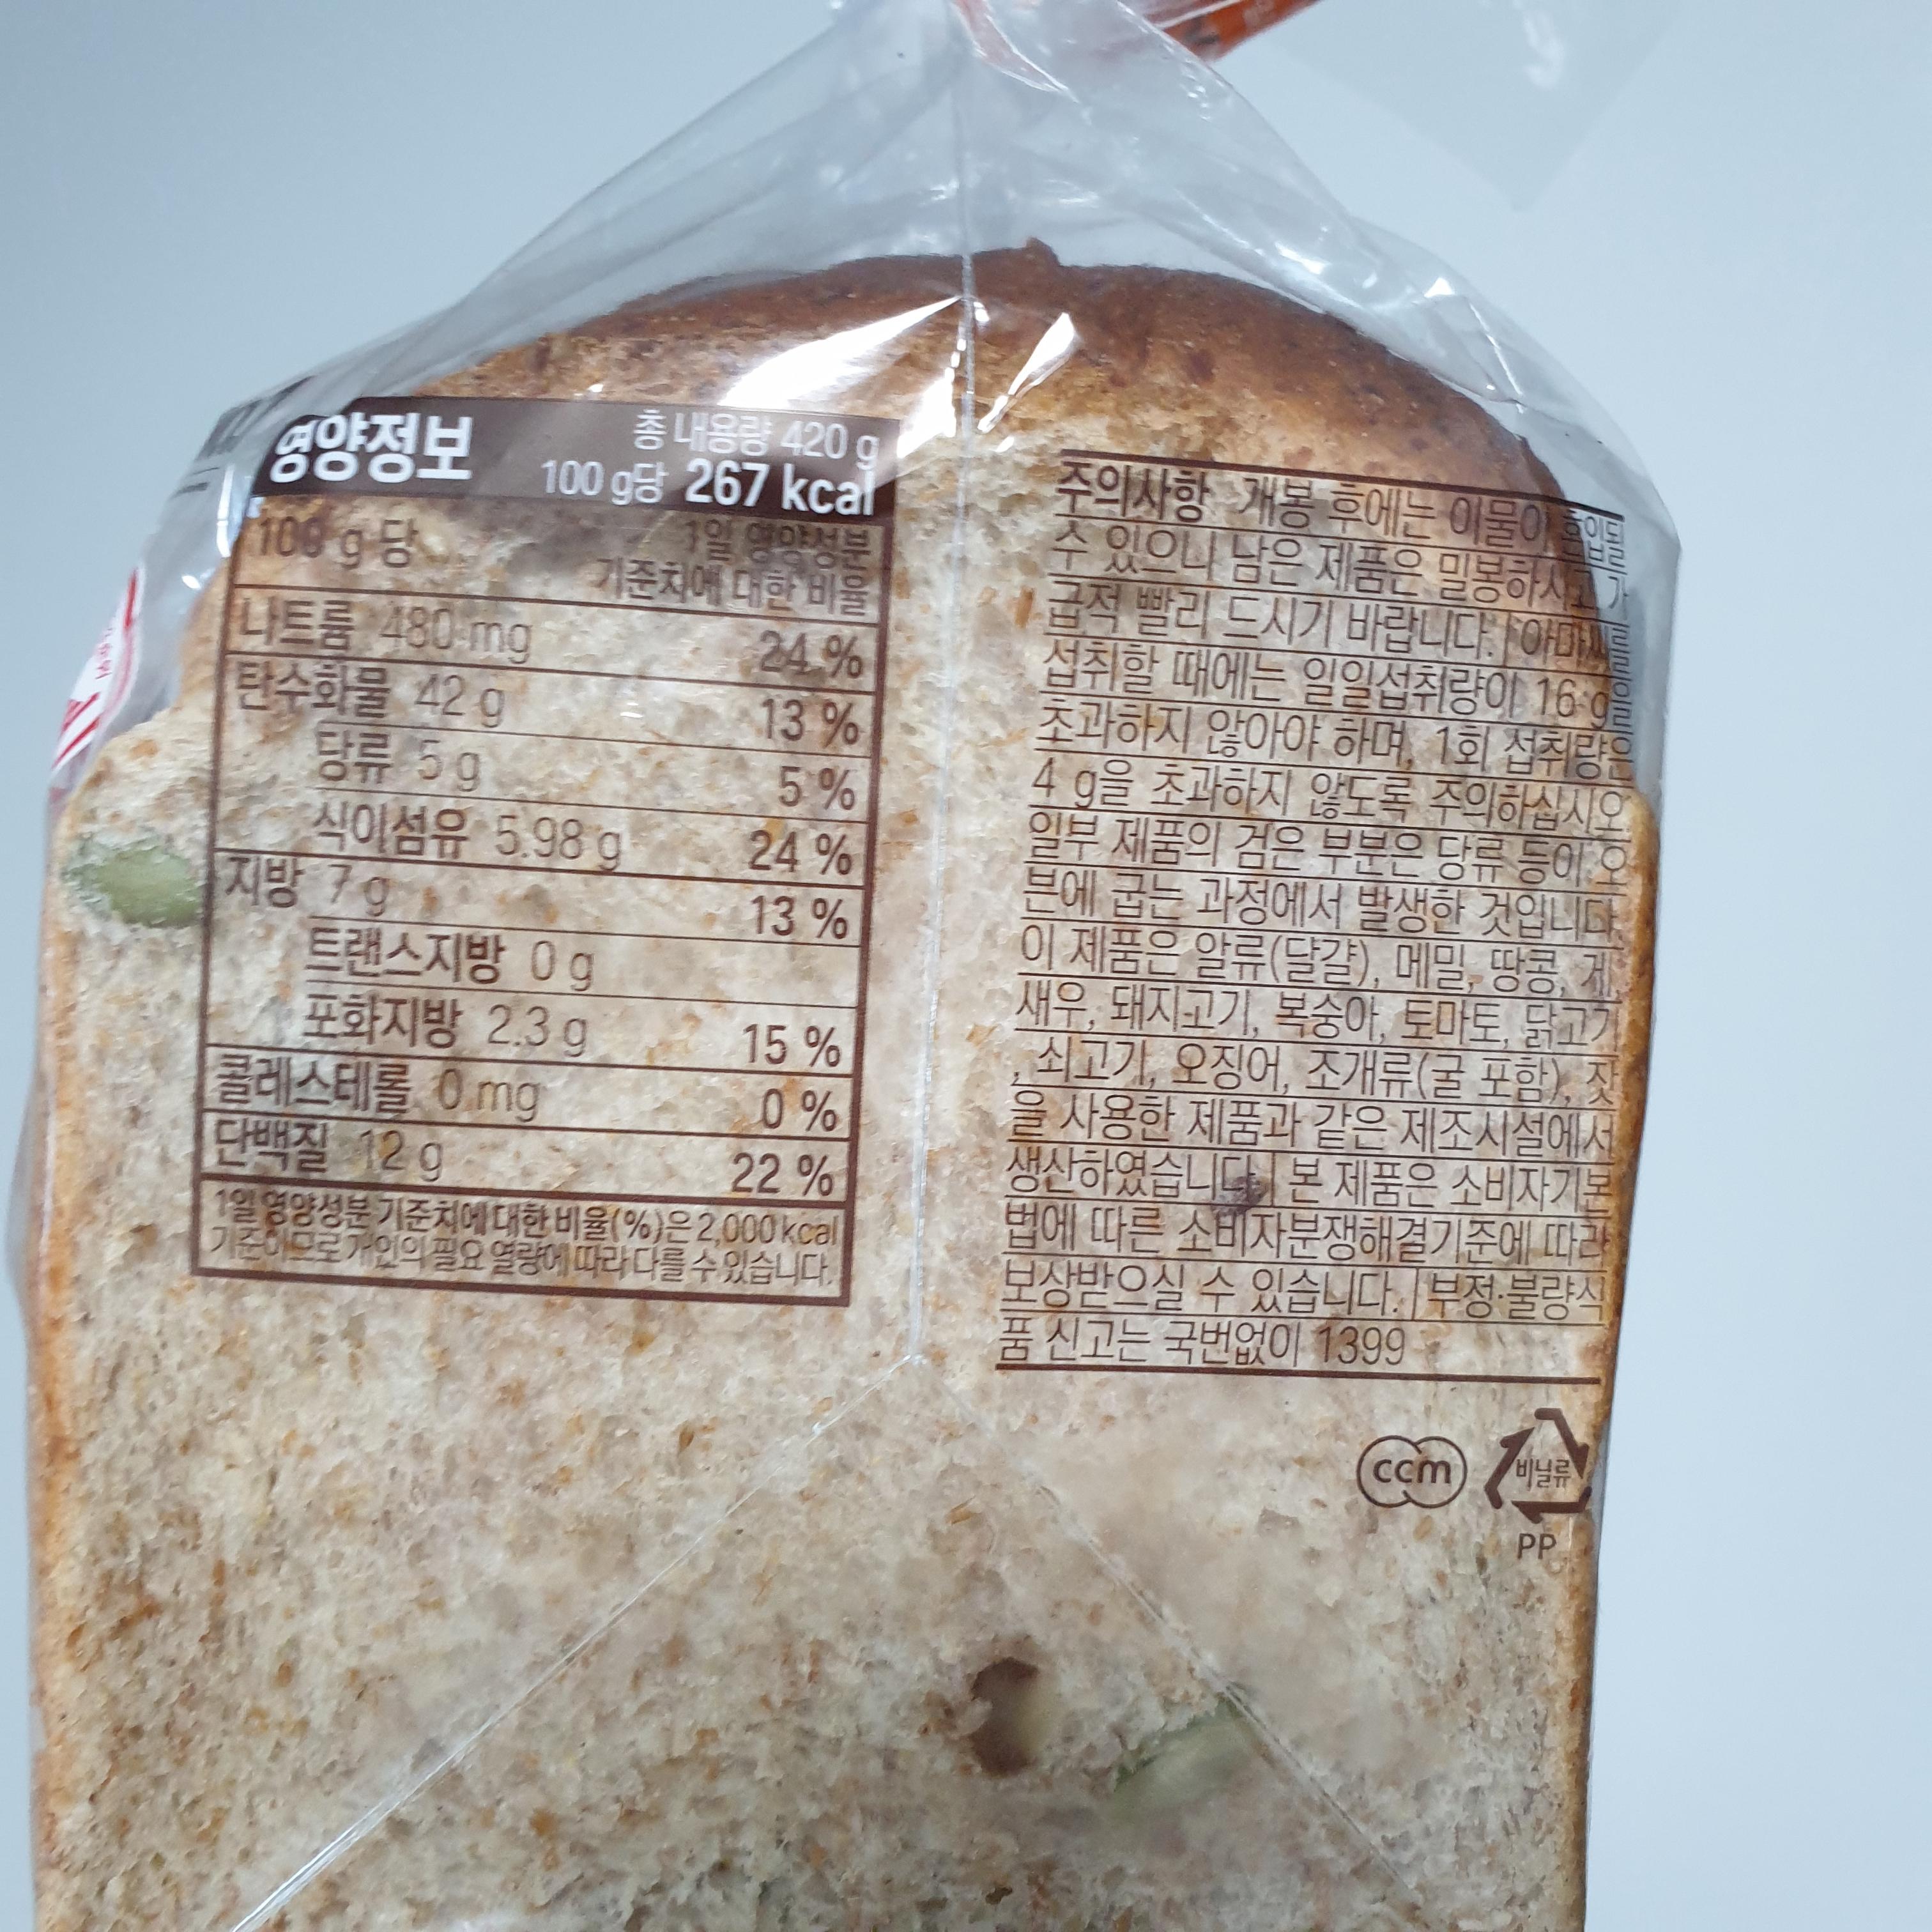 토종효모로 만든 로만밀 통밀식빵, 건강한 통밀 식빵 추천